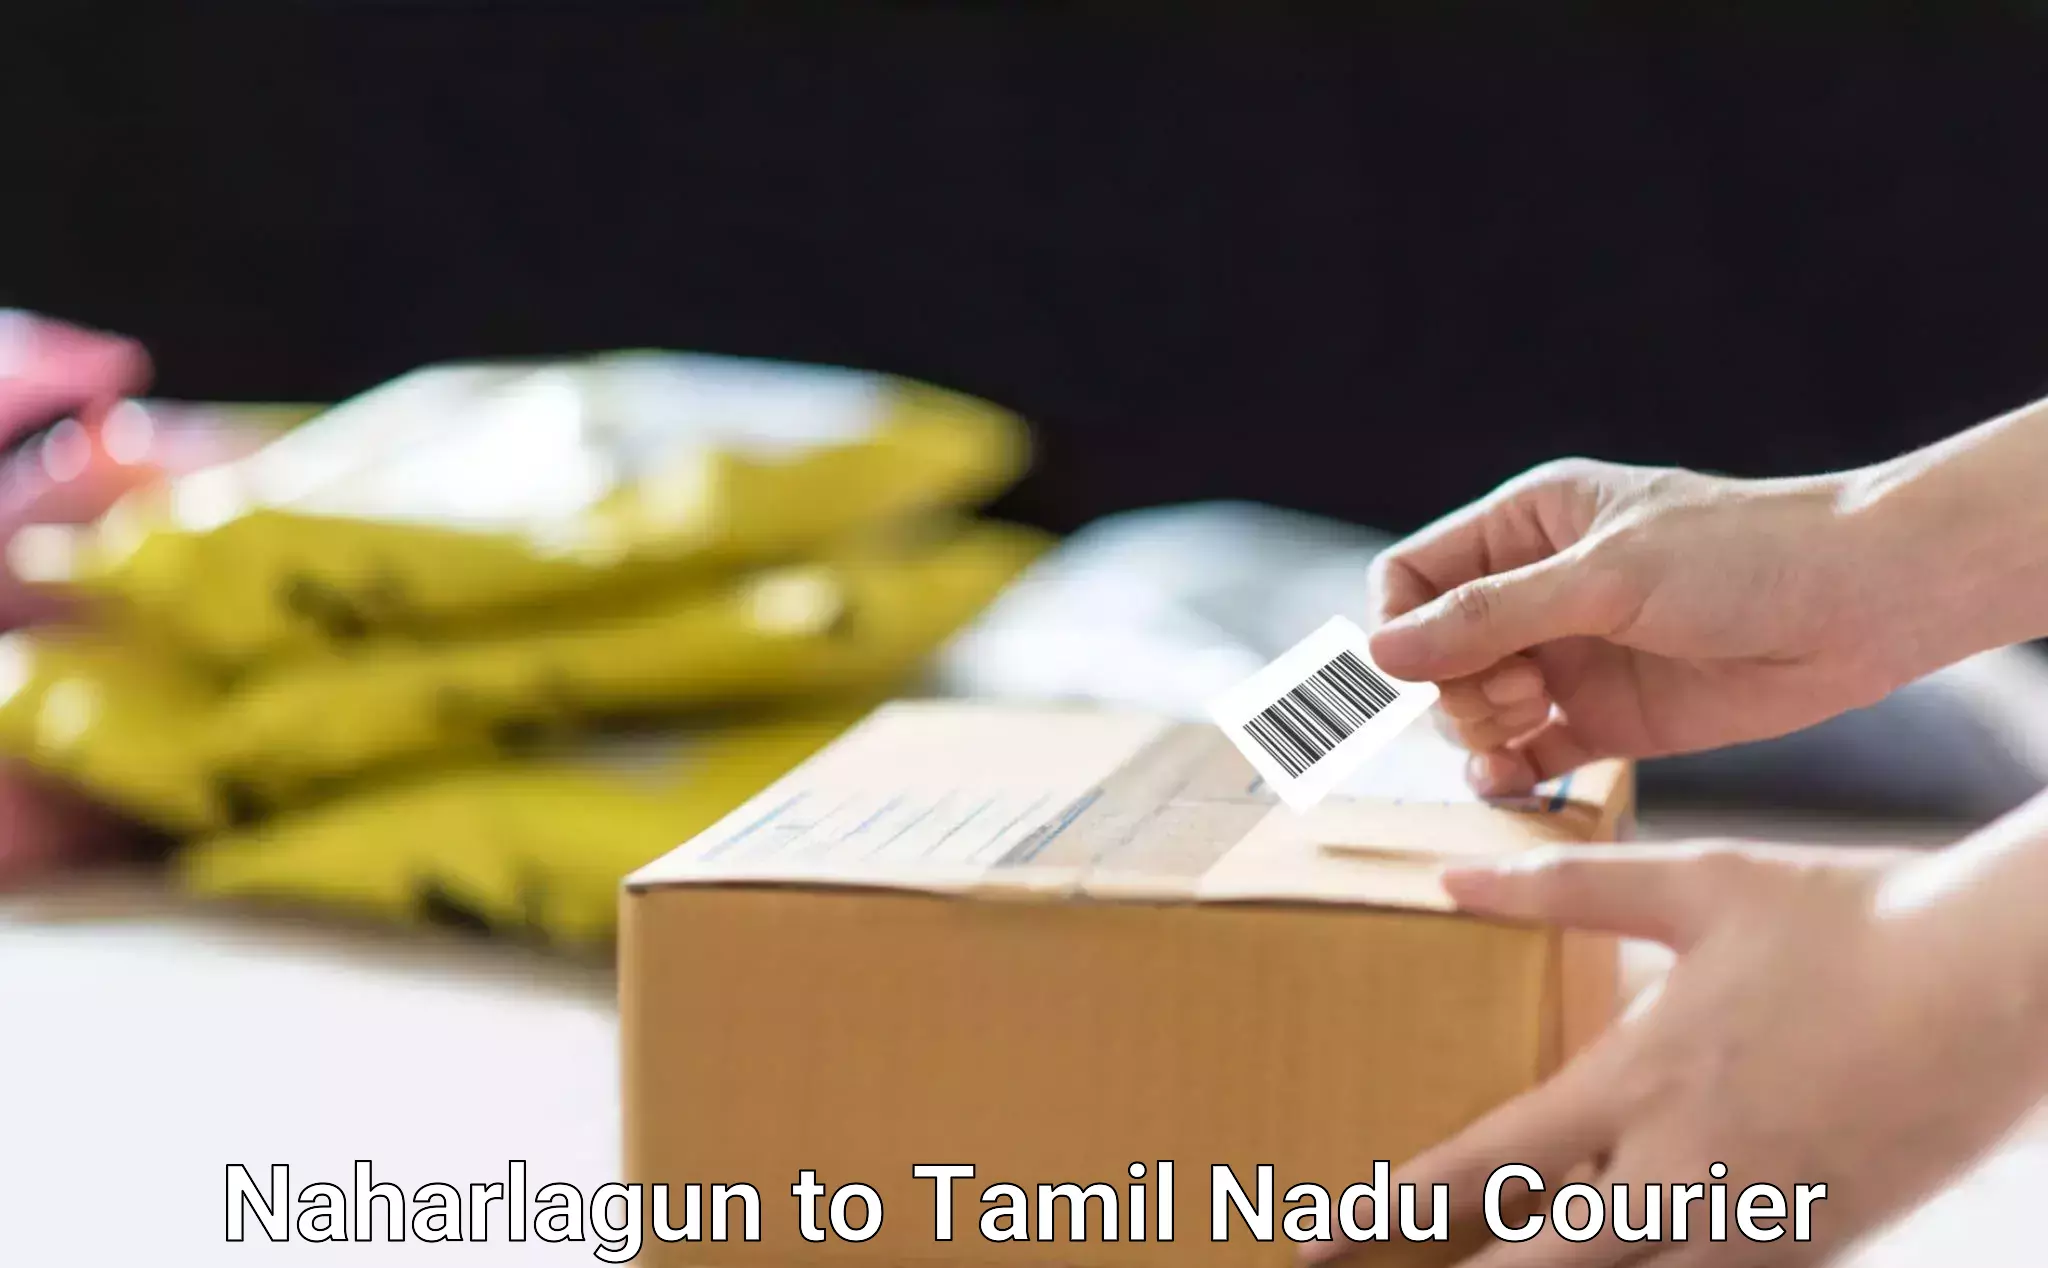 Express courier facilities Naharlagun to Tamil Nadu